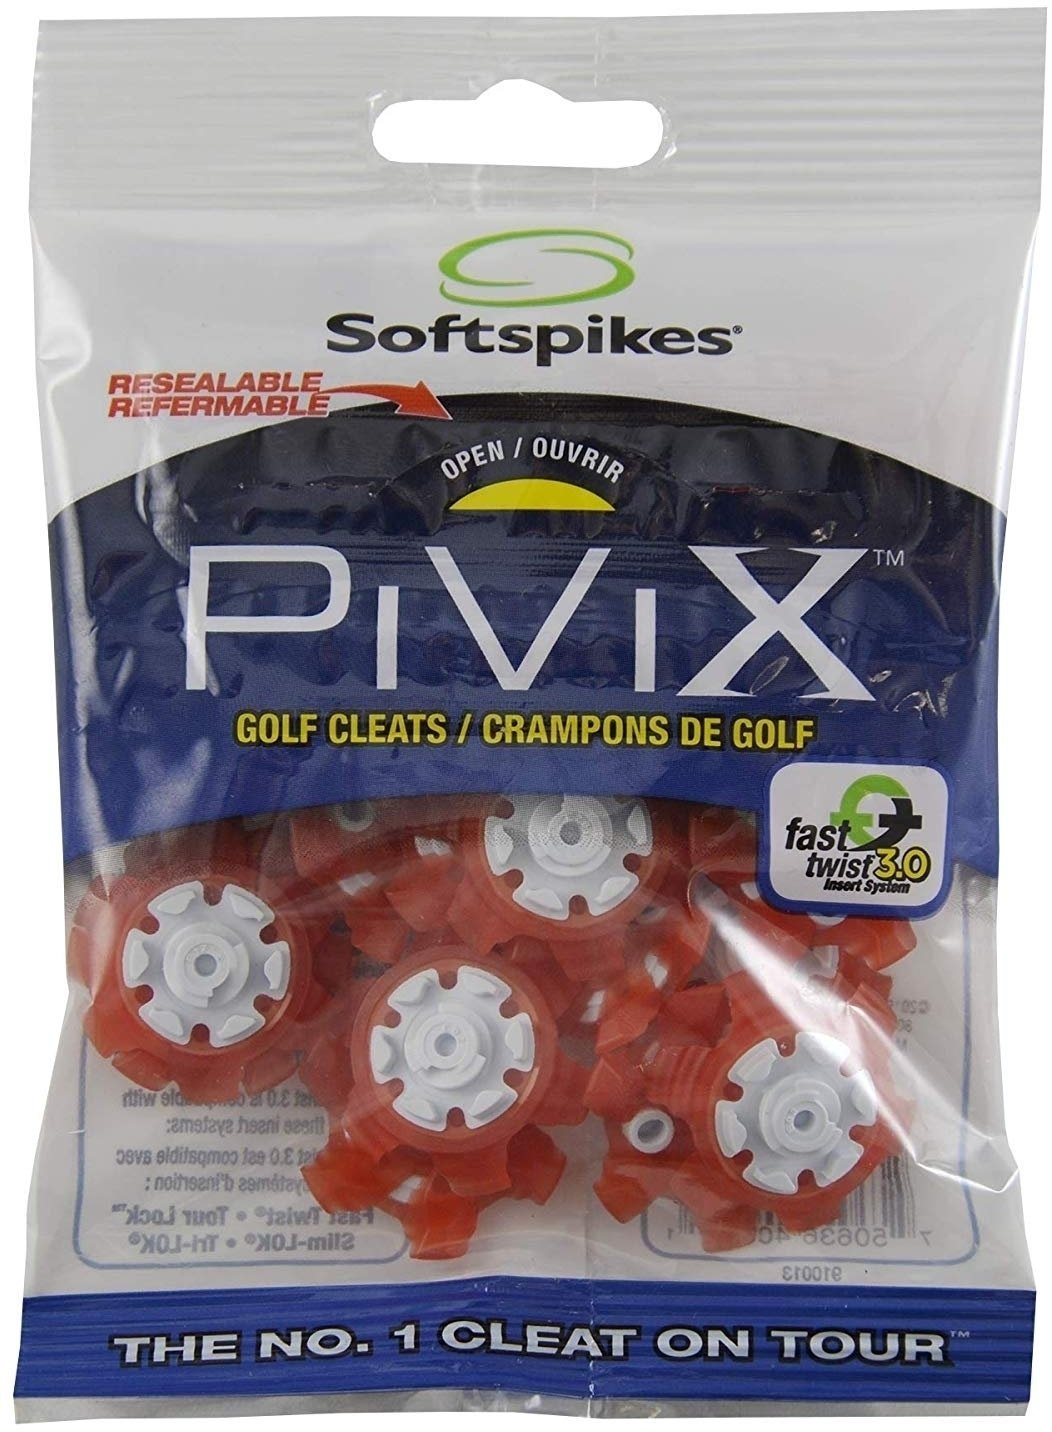 Příslušenství ke golfové obuvi Softspikes Pivix Fast Twist 3.0 Red